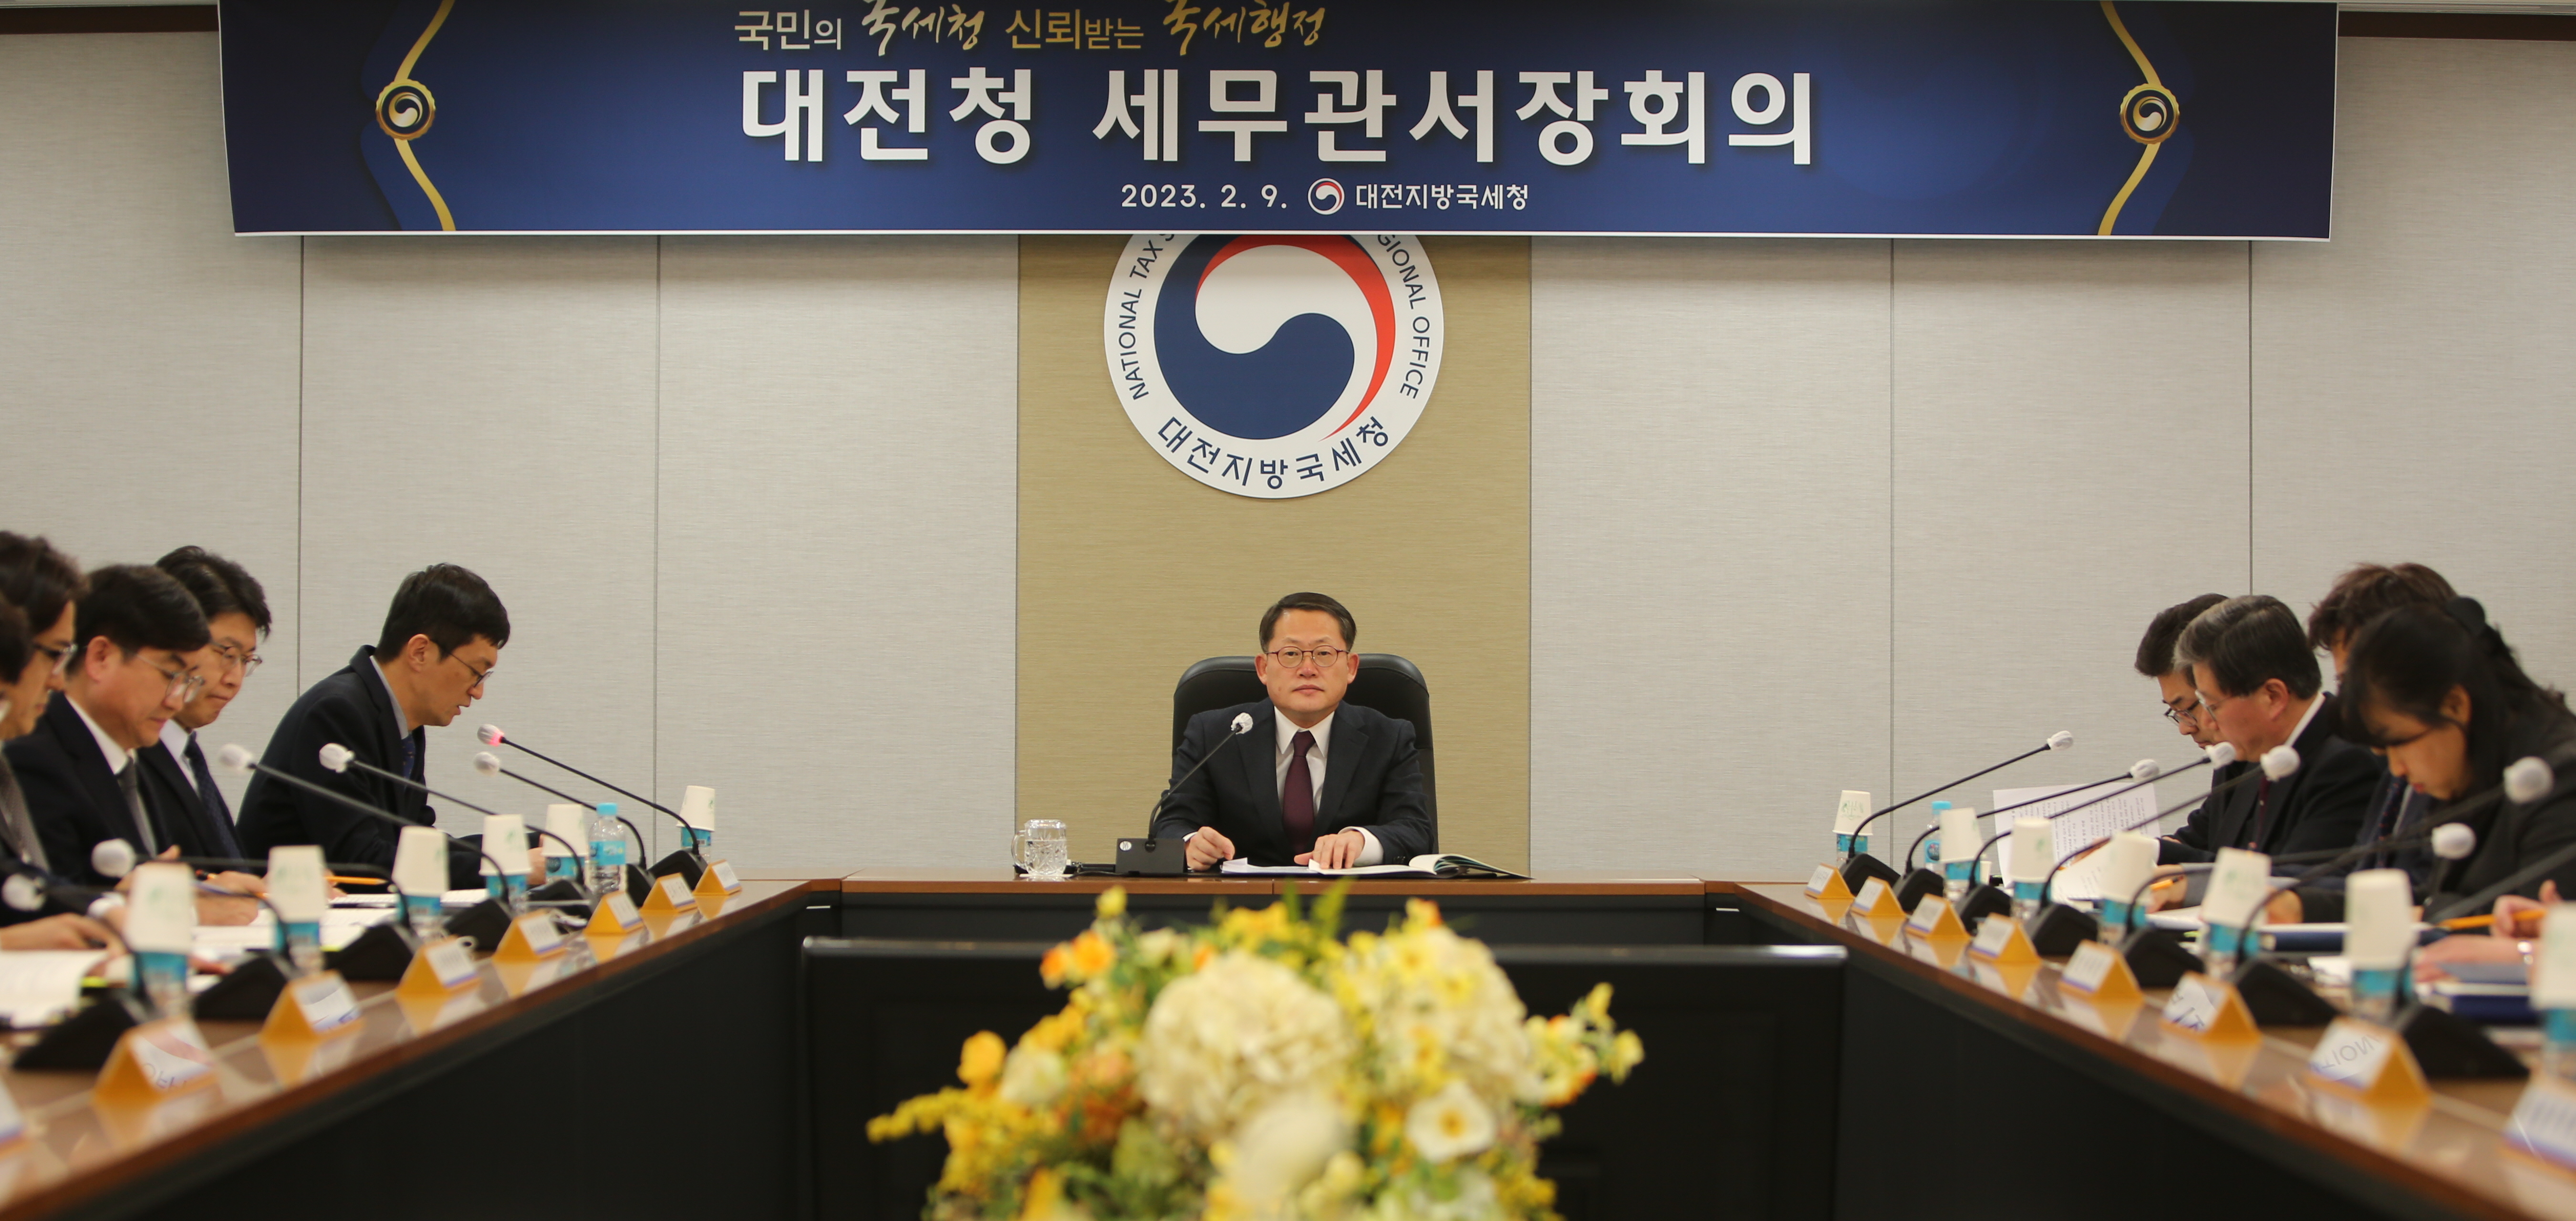 대전지방국세청 상반기 세무관서장회의 개최 이미지 1